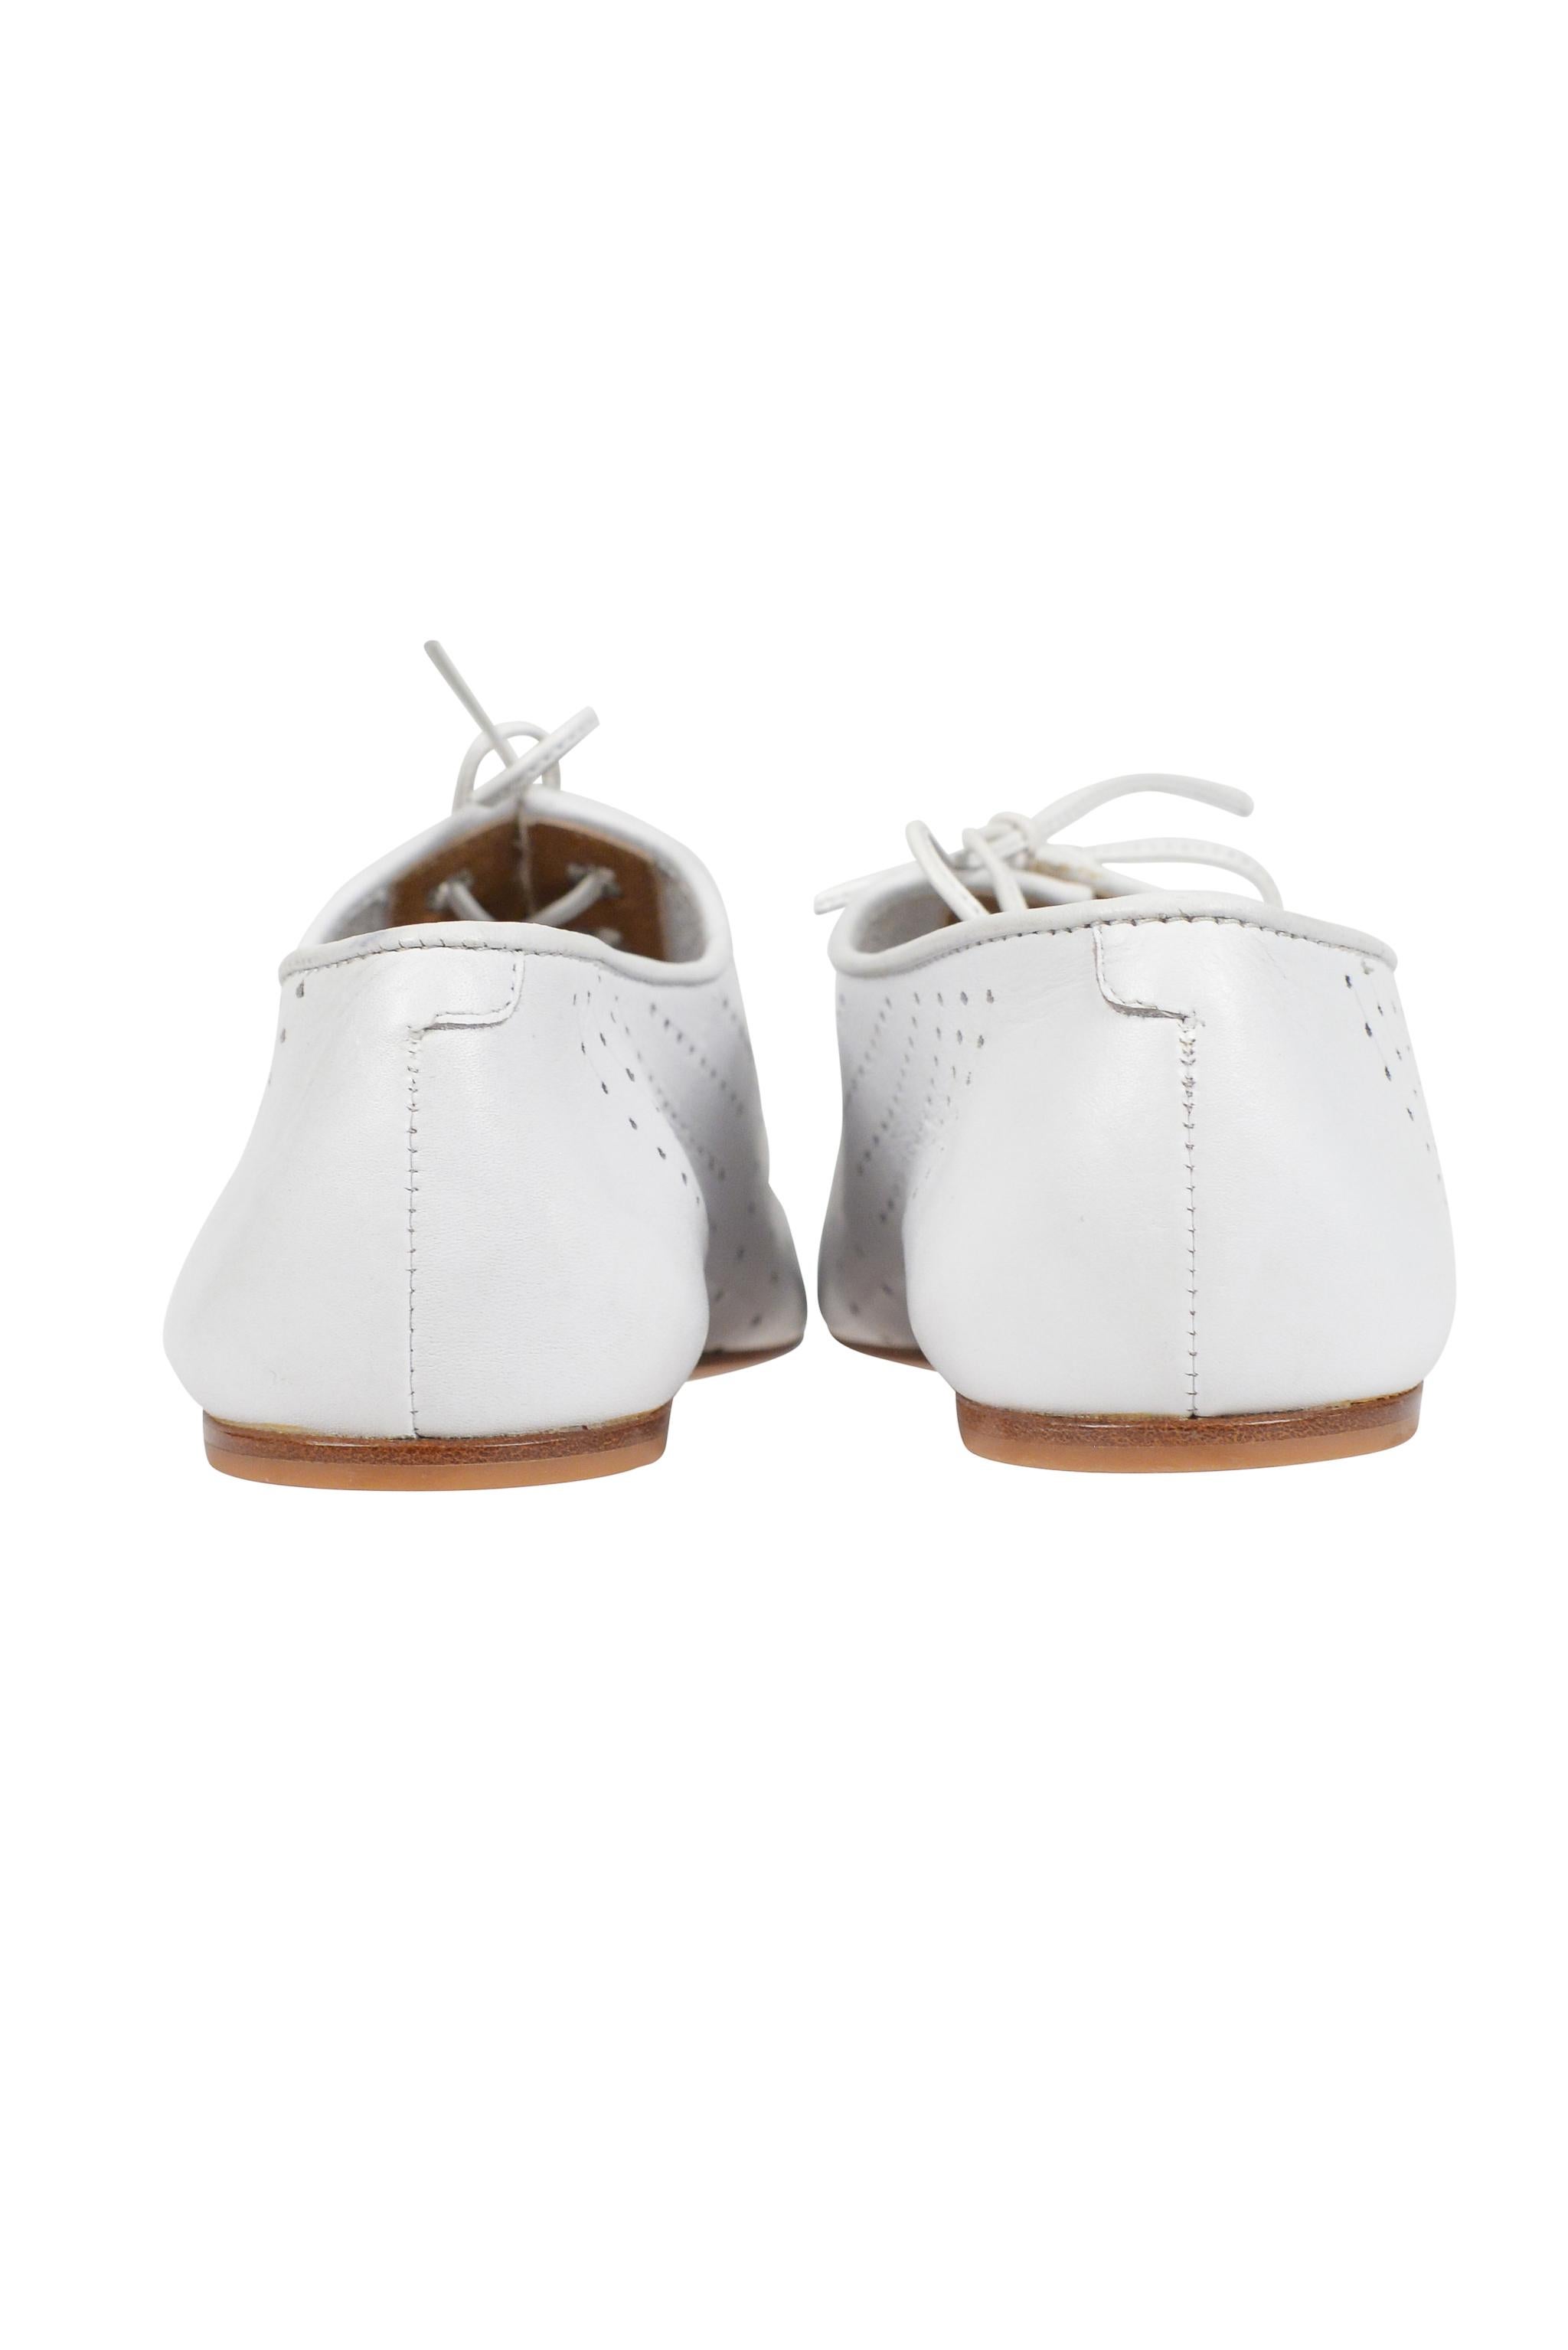 Chaussures Oxford Brogue perforées en cuir blanc Alaia, années 80-90 Pour femmes en vente